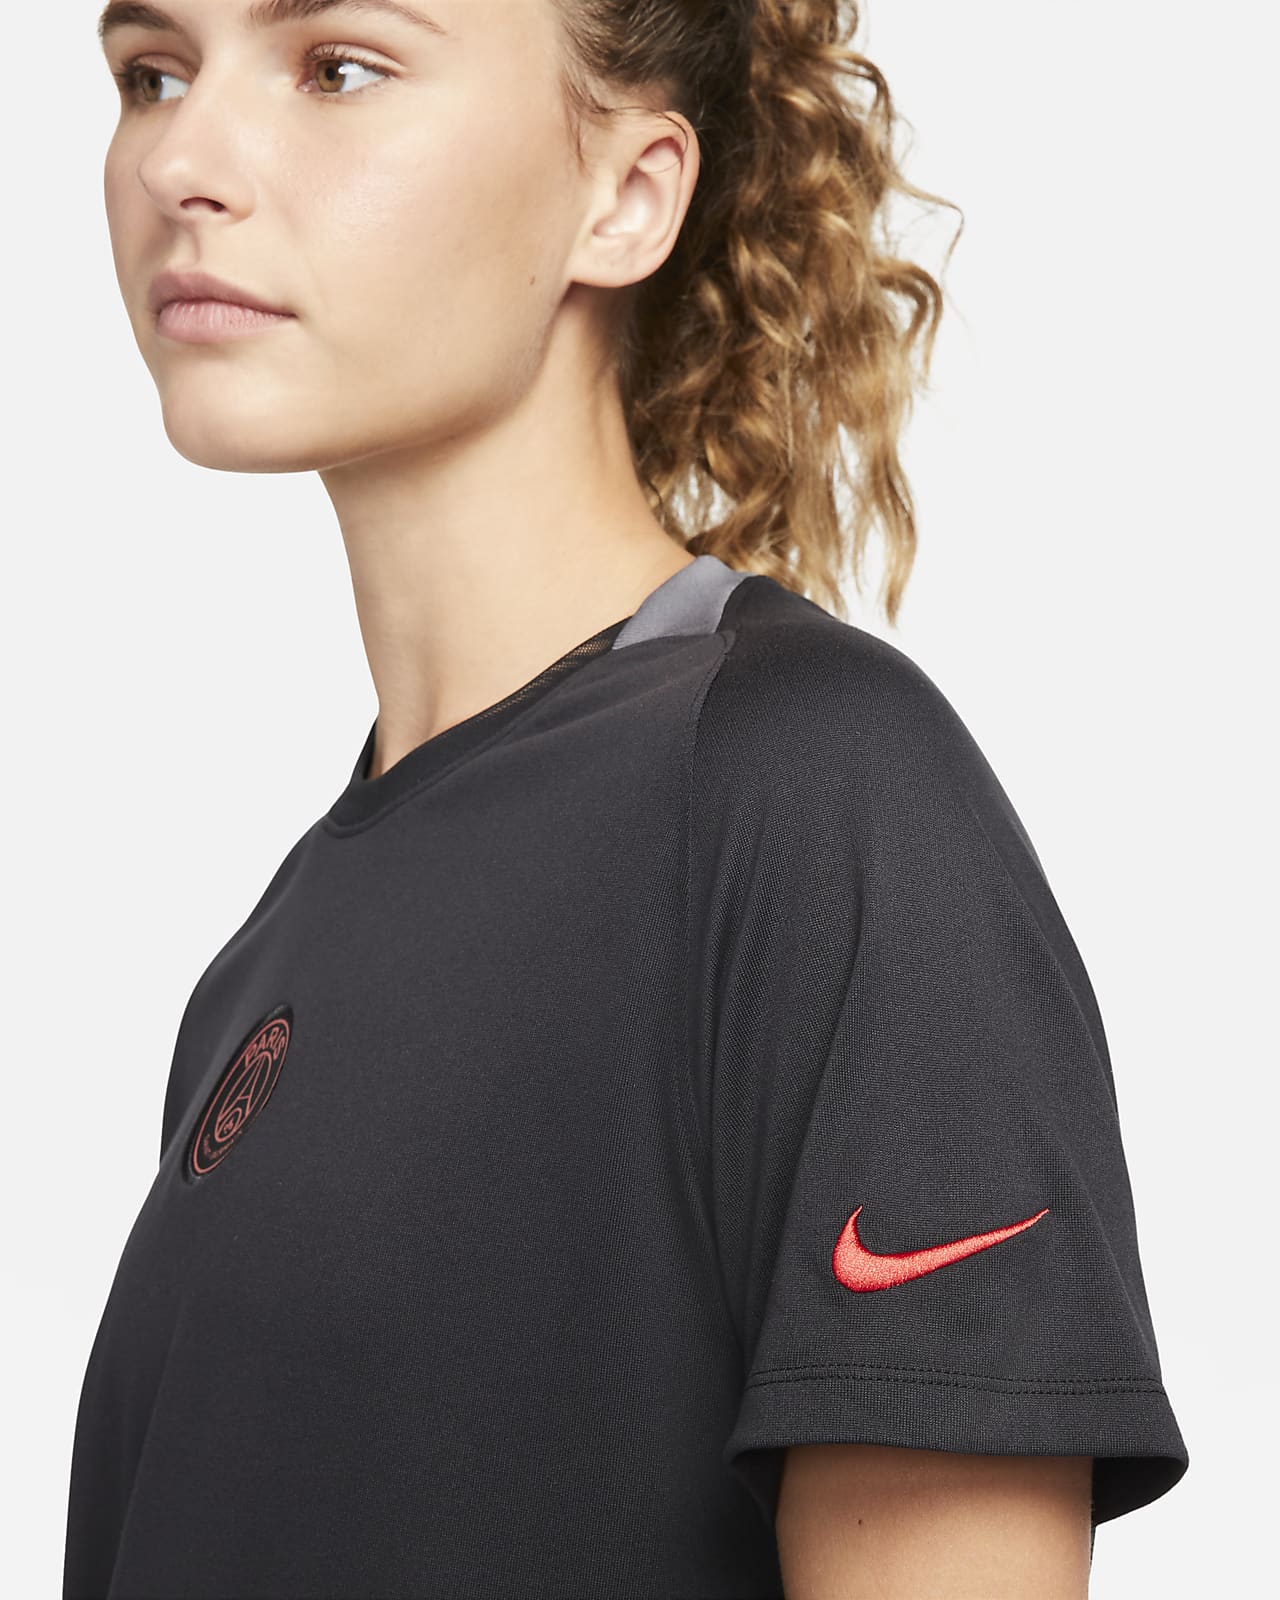 Paris Saint-Germain Women's Nike Dri-FIT Short-Sleeve Football Top. Nike SA